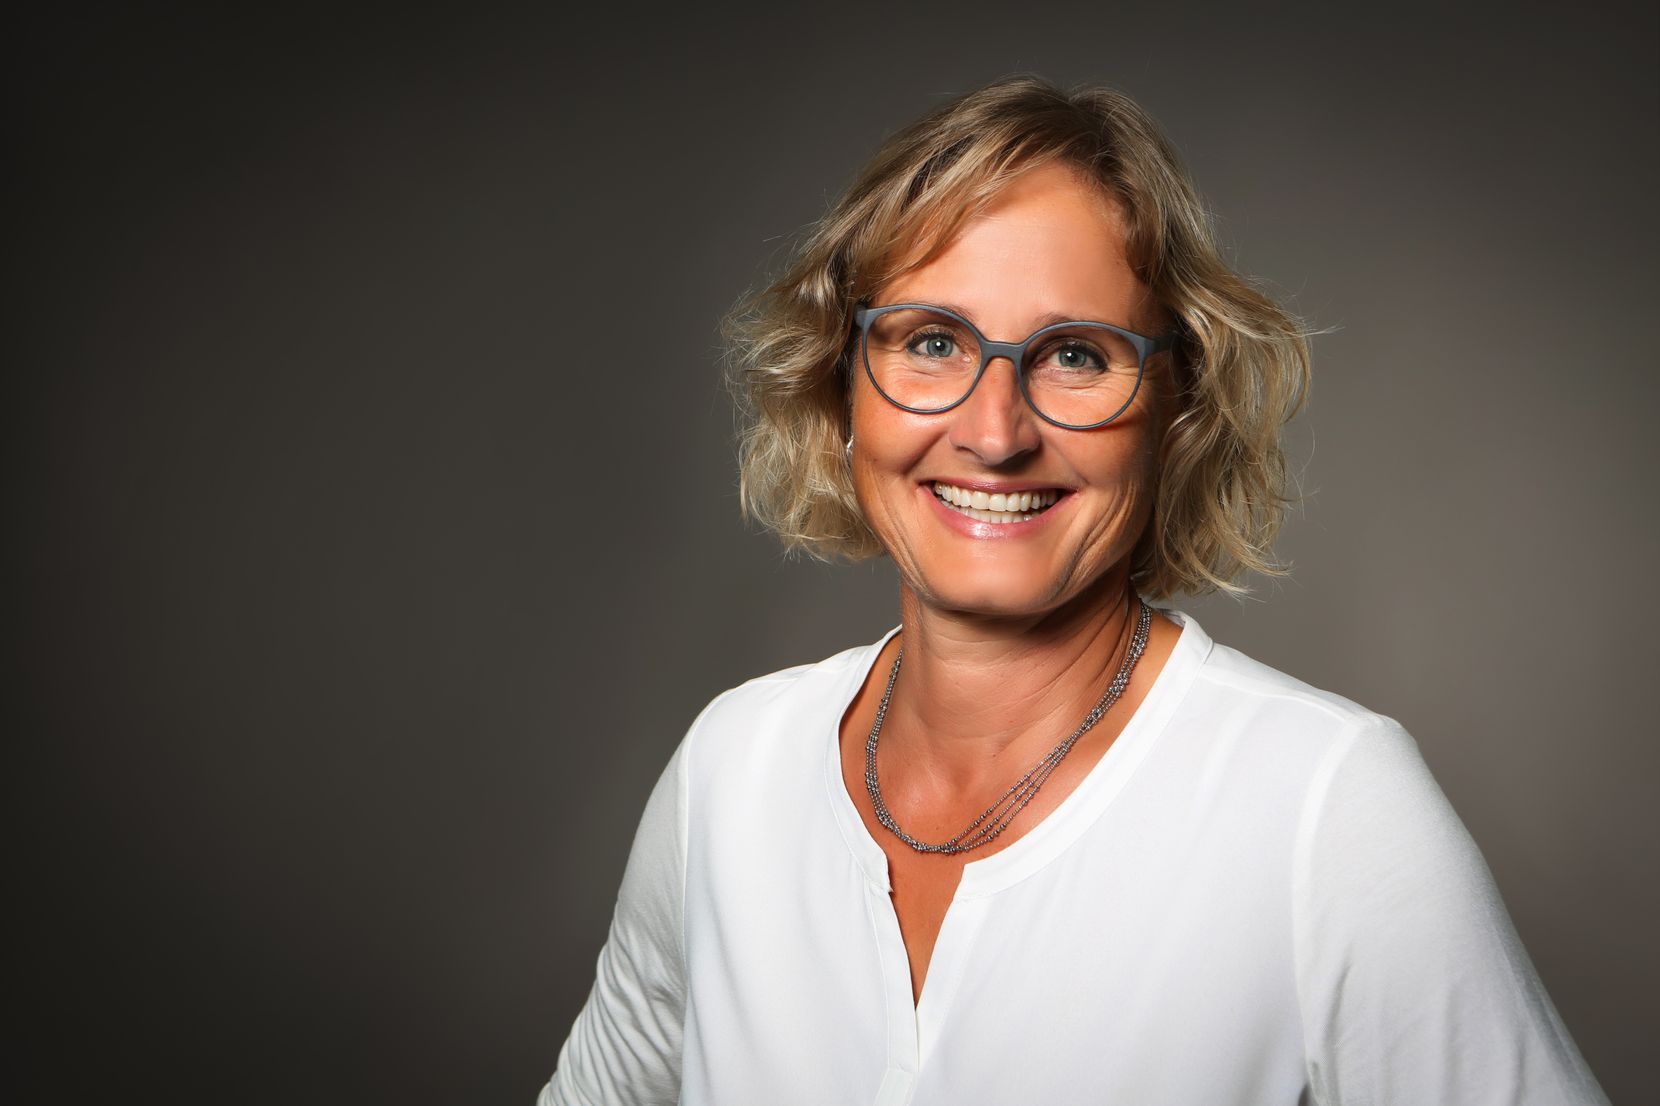 Porträtfoto von Bea Wanner, Hörexpertin in der Hörberatung Richter.